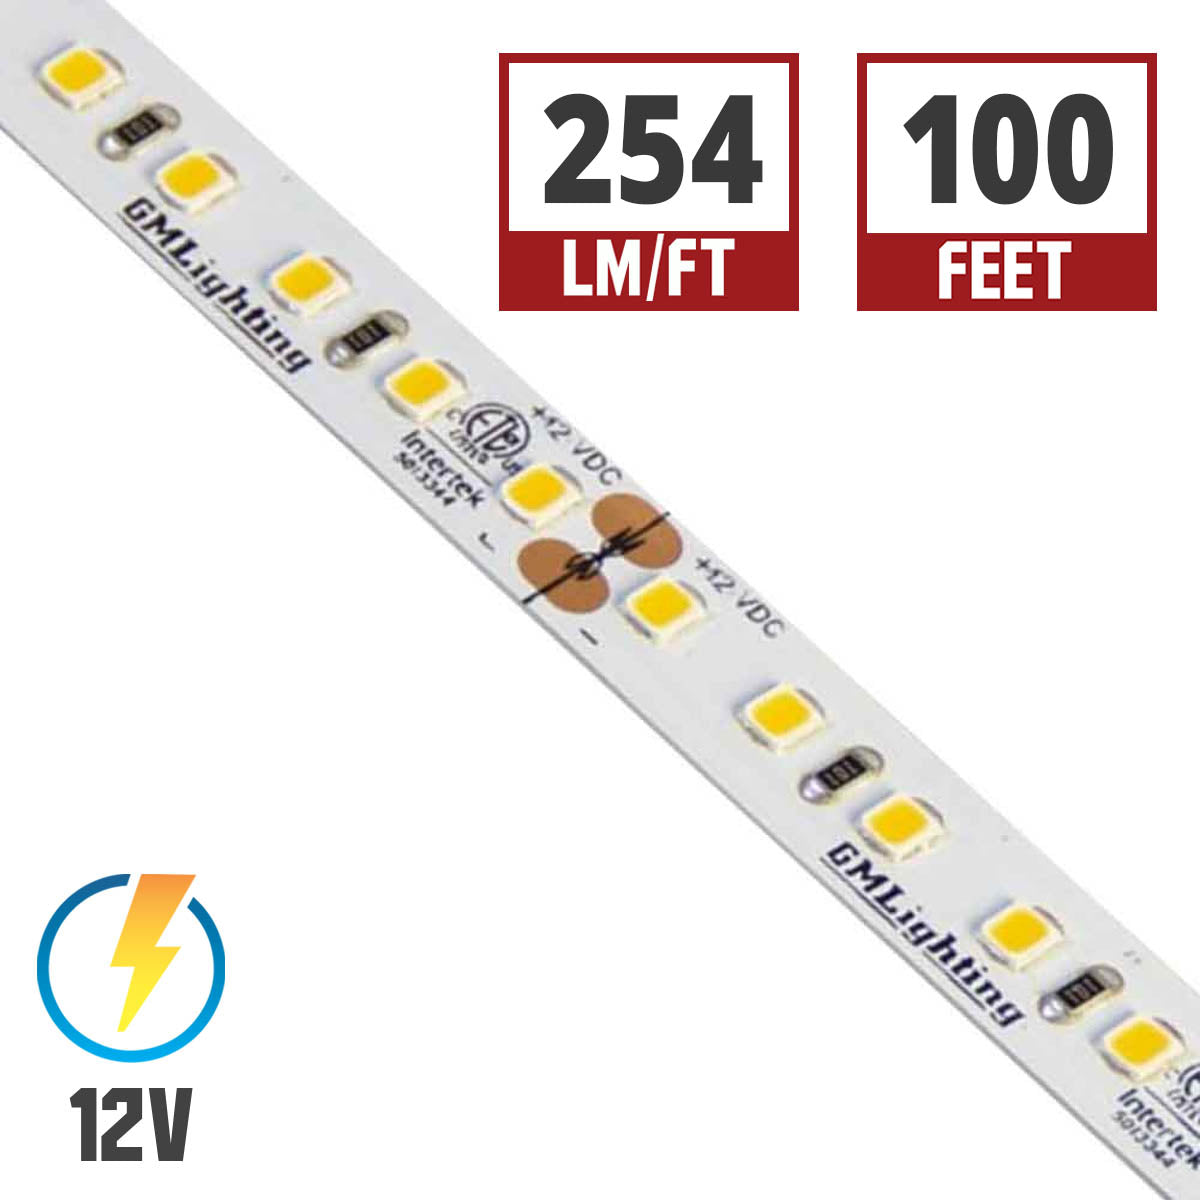 LTR-P Pro LED Strip Light, 3.0W / ft, 240 Lumens per Ft, 12V